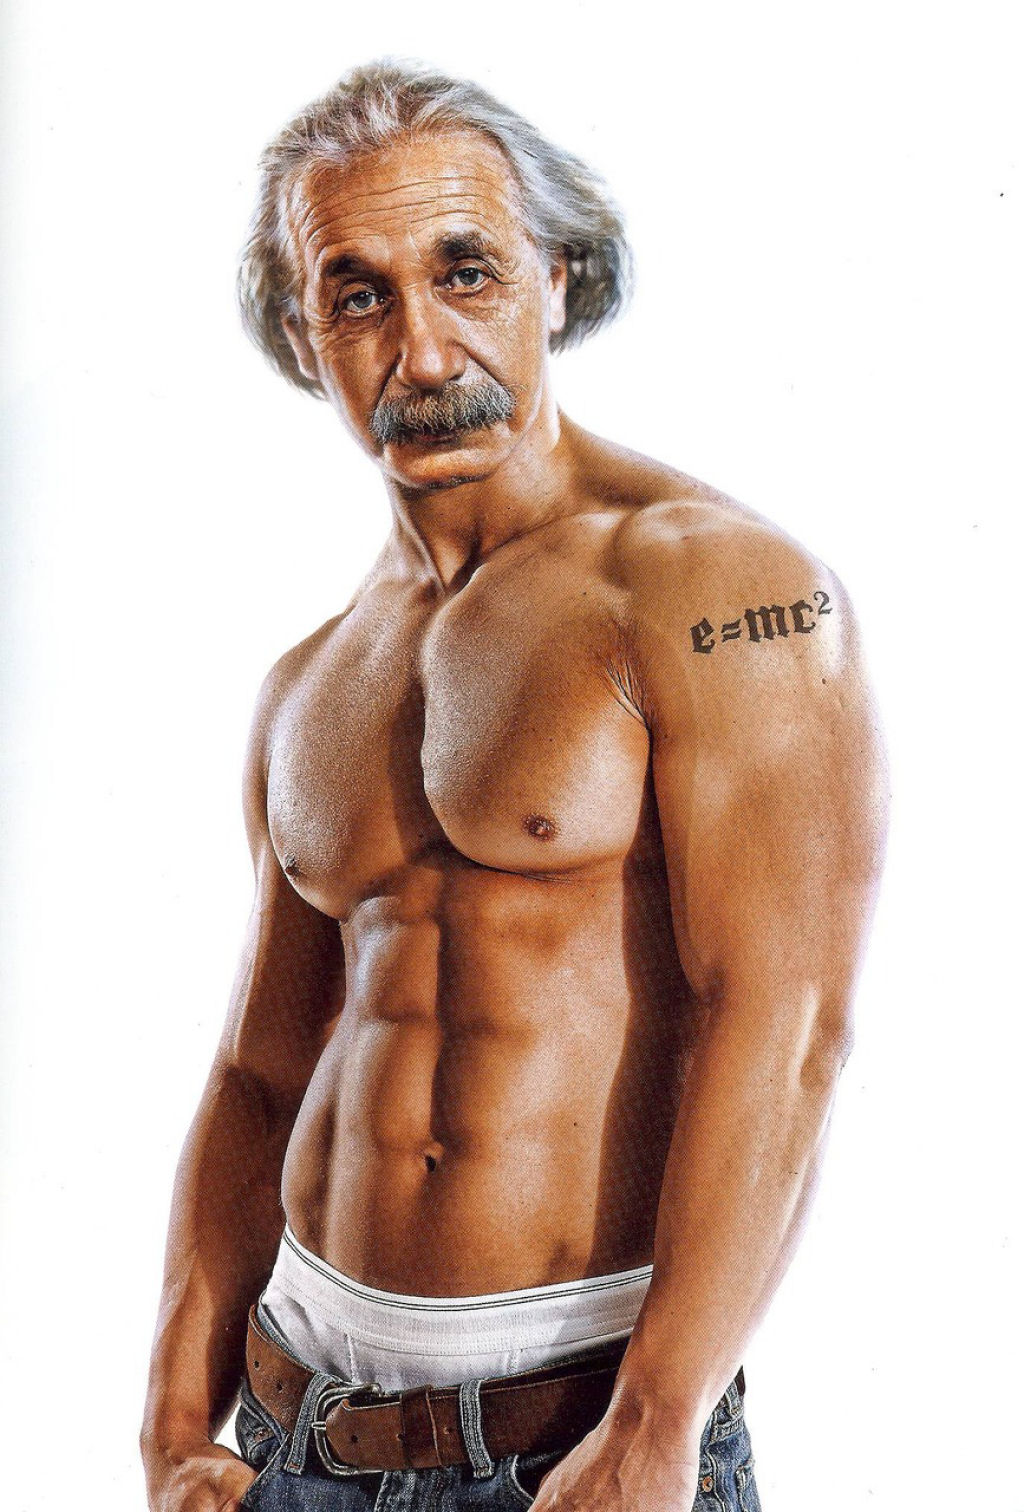 Estudos afirmam que Einstein ficava mais forte quando ele viajava, pois ele se convertia em fsico-turista. (ok, j parei!)